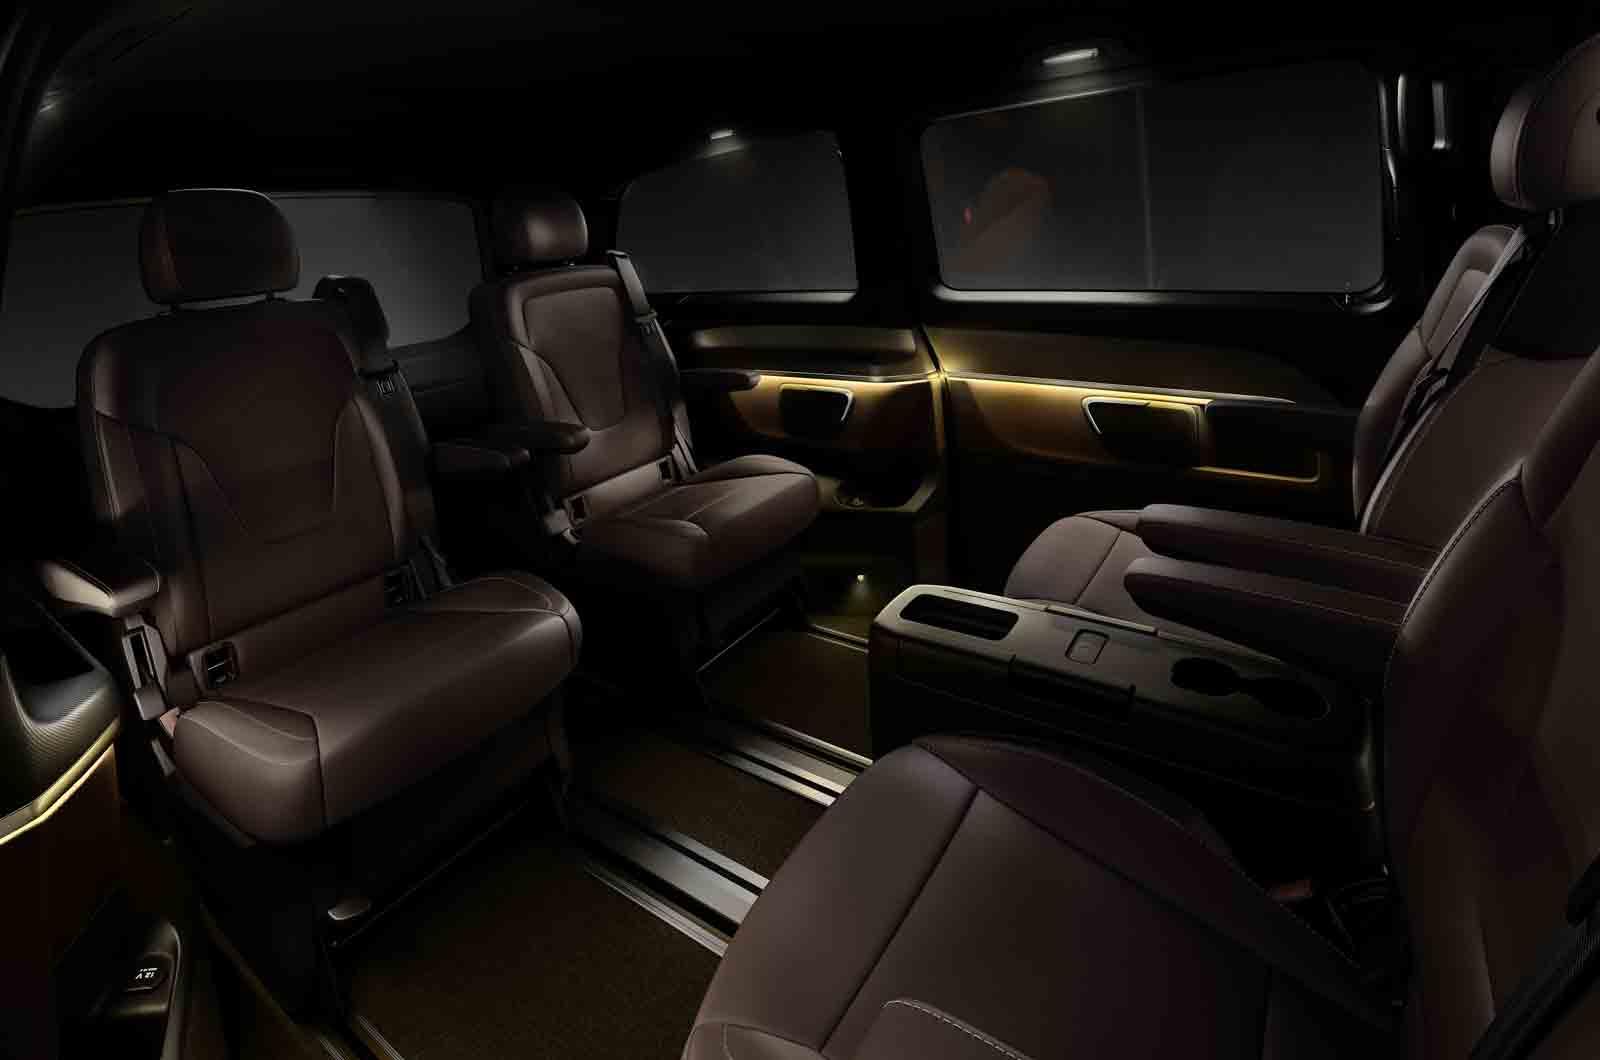 Mercedes-Benz V-Class (W447) interior revealed